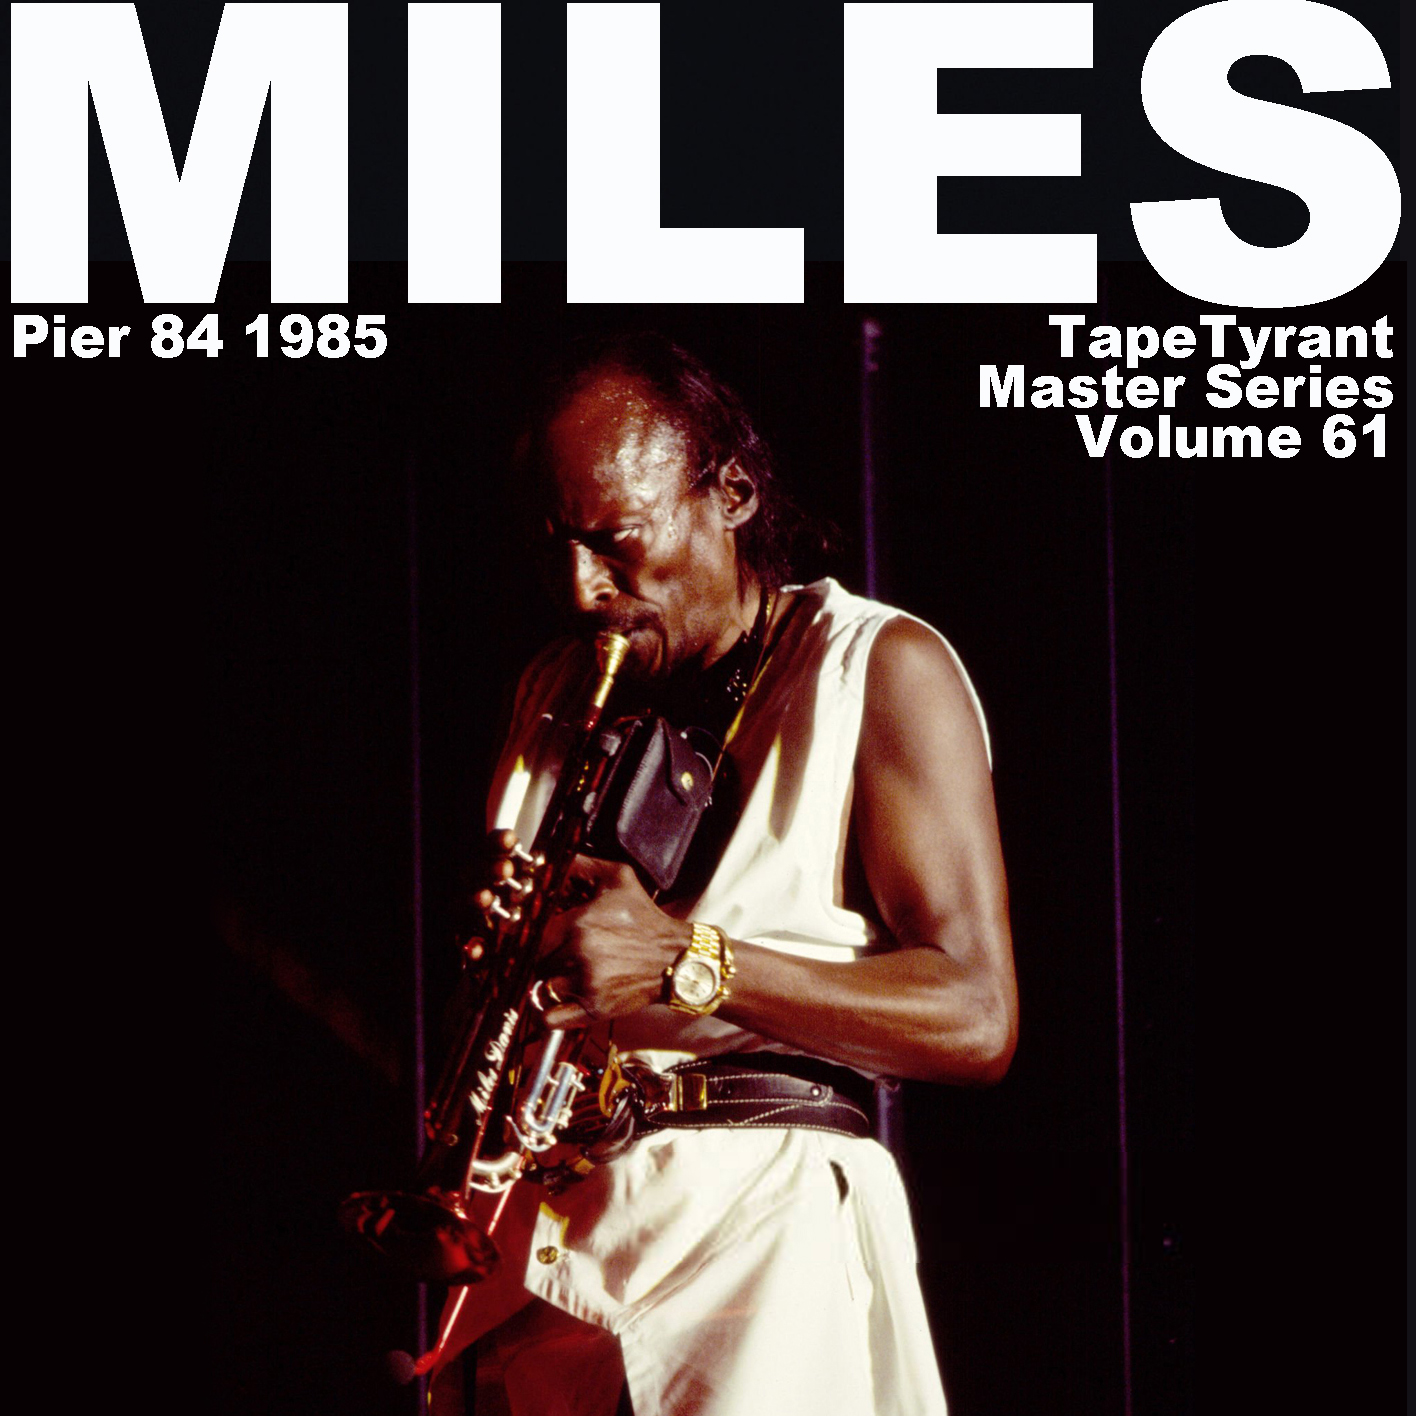 MilesDavis1985-08-17Pier84NYC (2).jpg